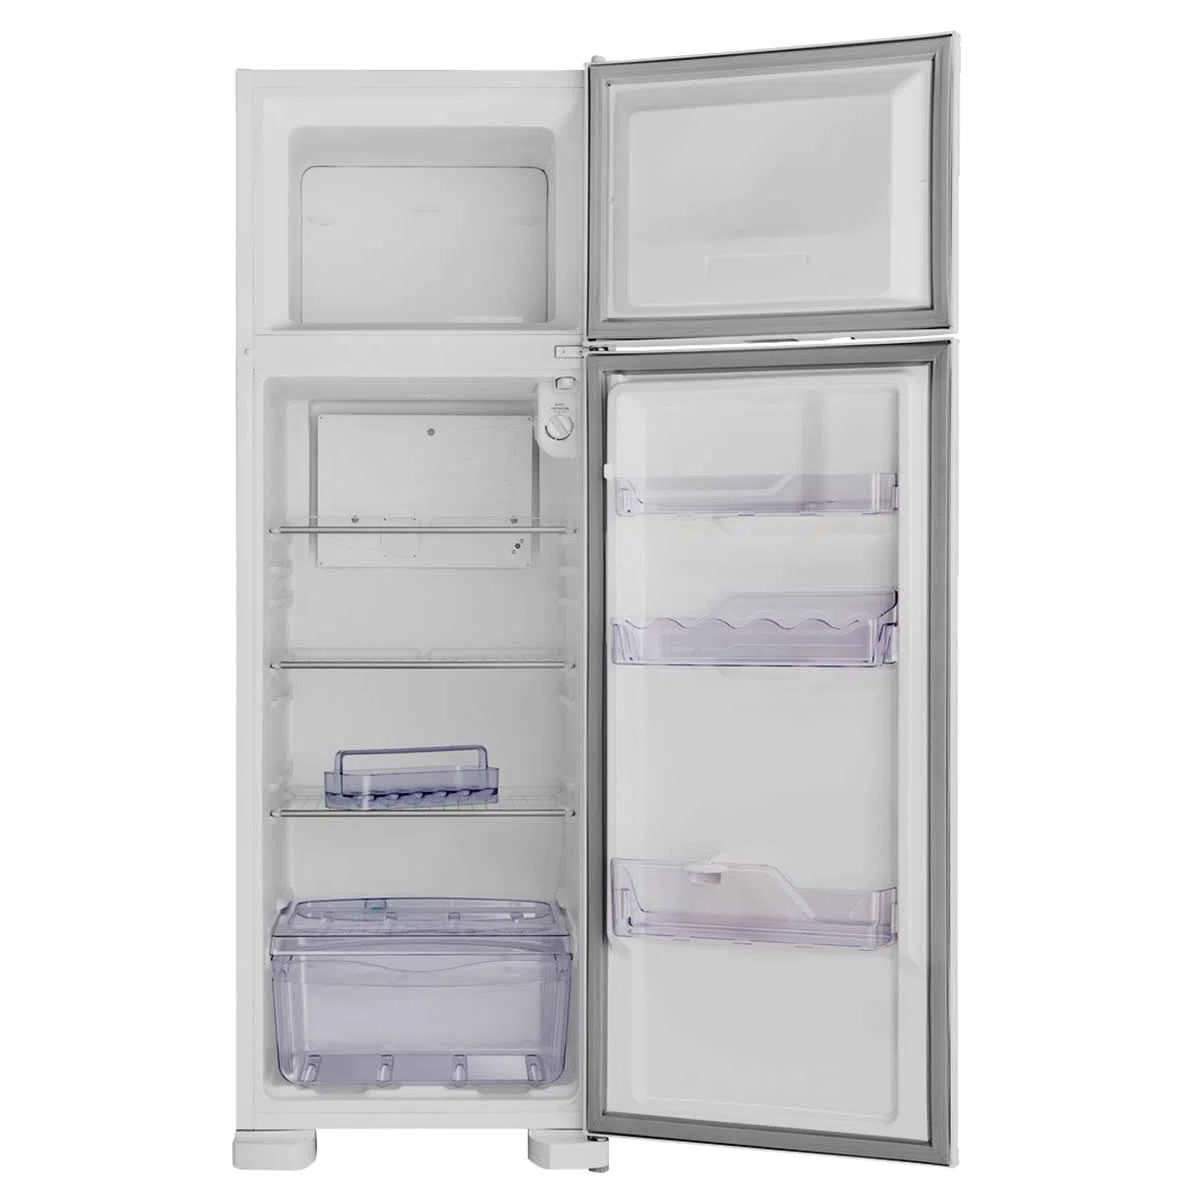 geladeira-electrolux-2-portas-dc35a-260-litros-branca-220v-2.jpg